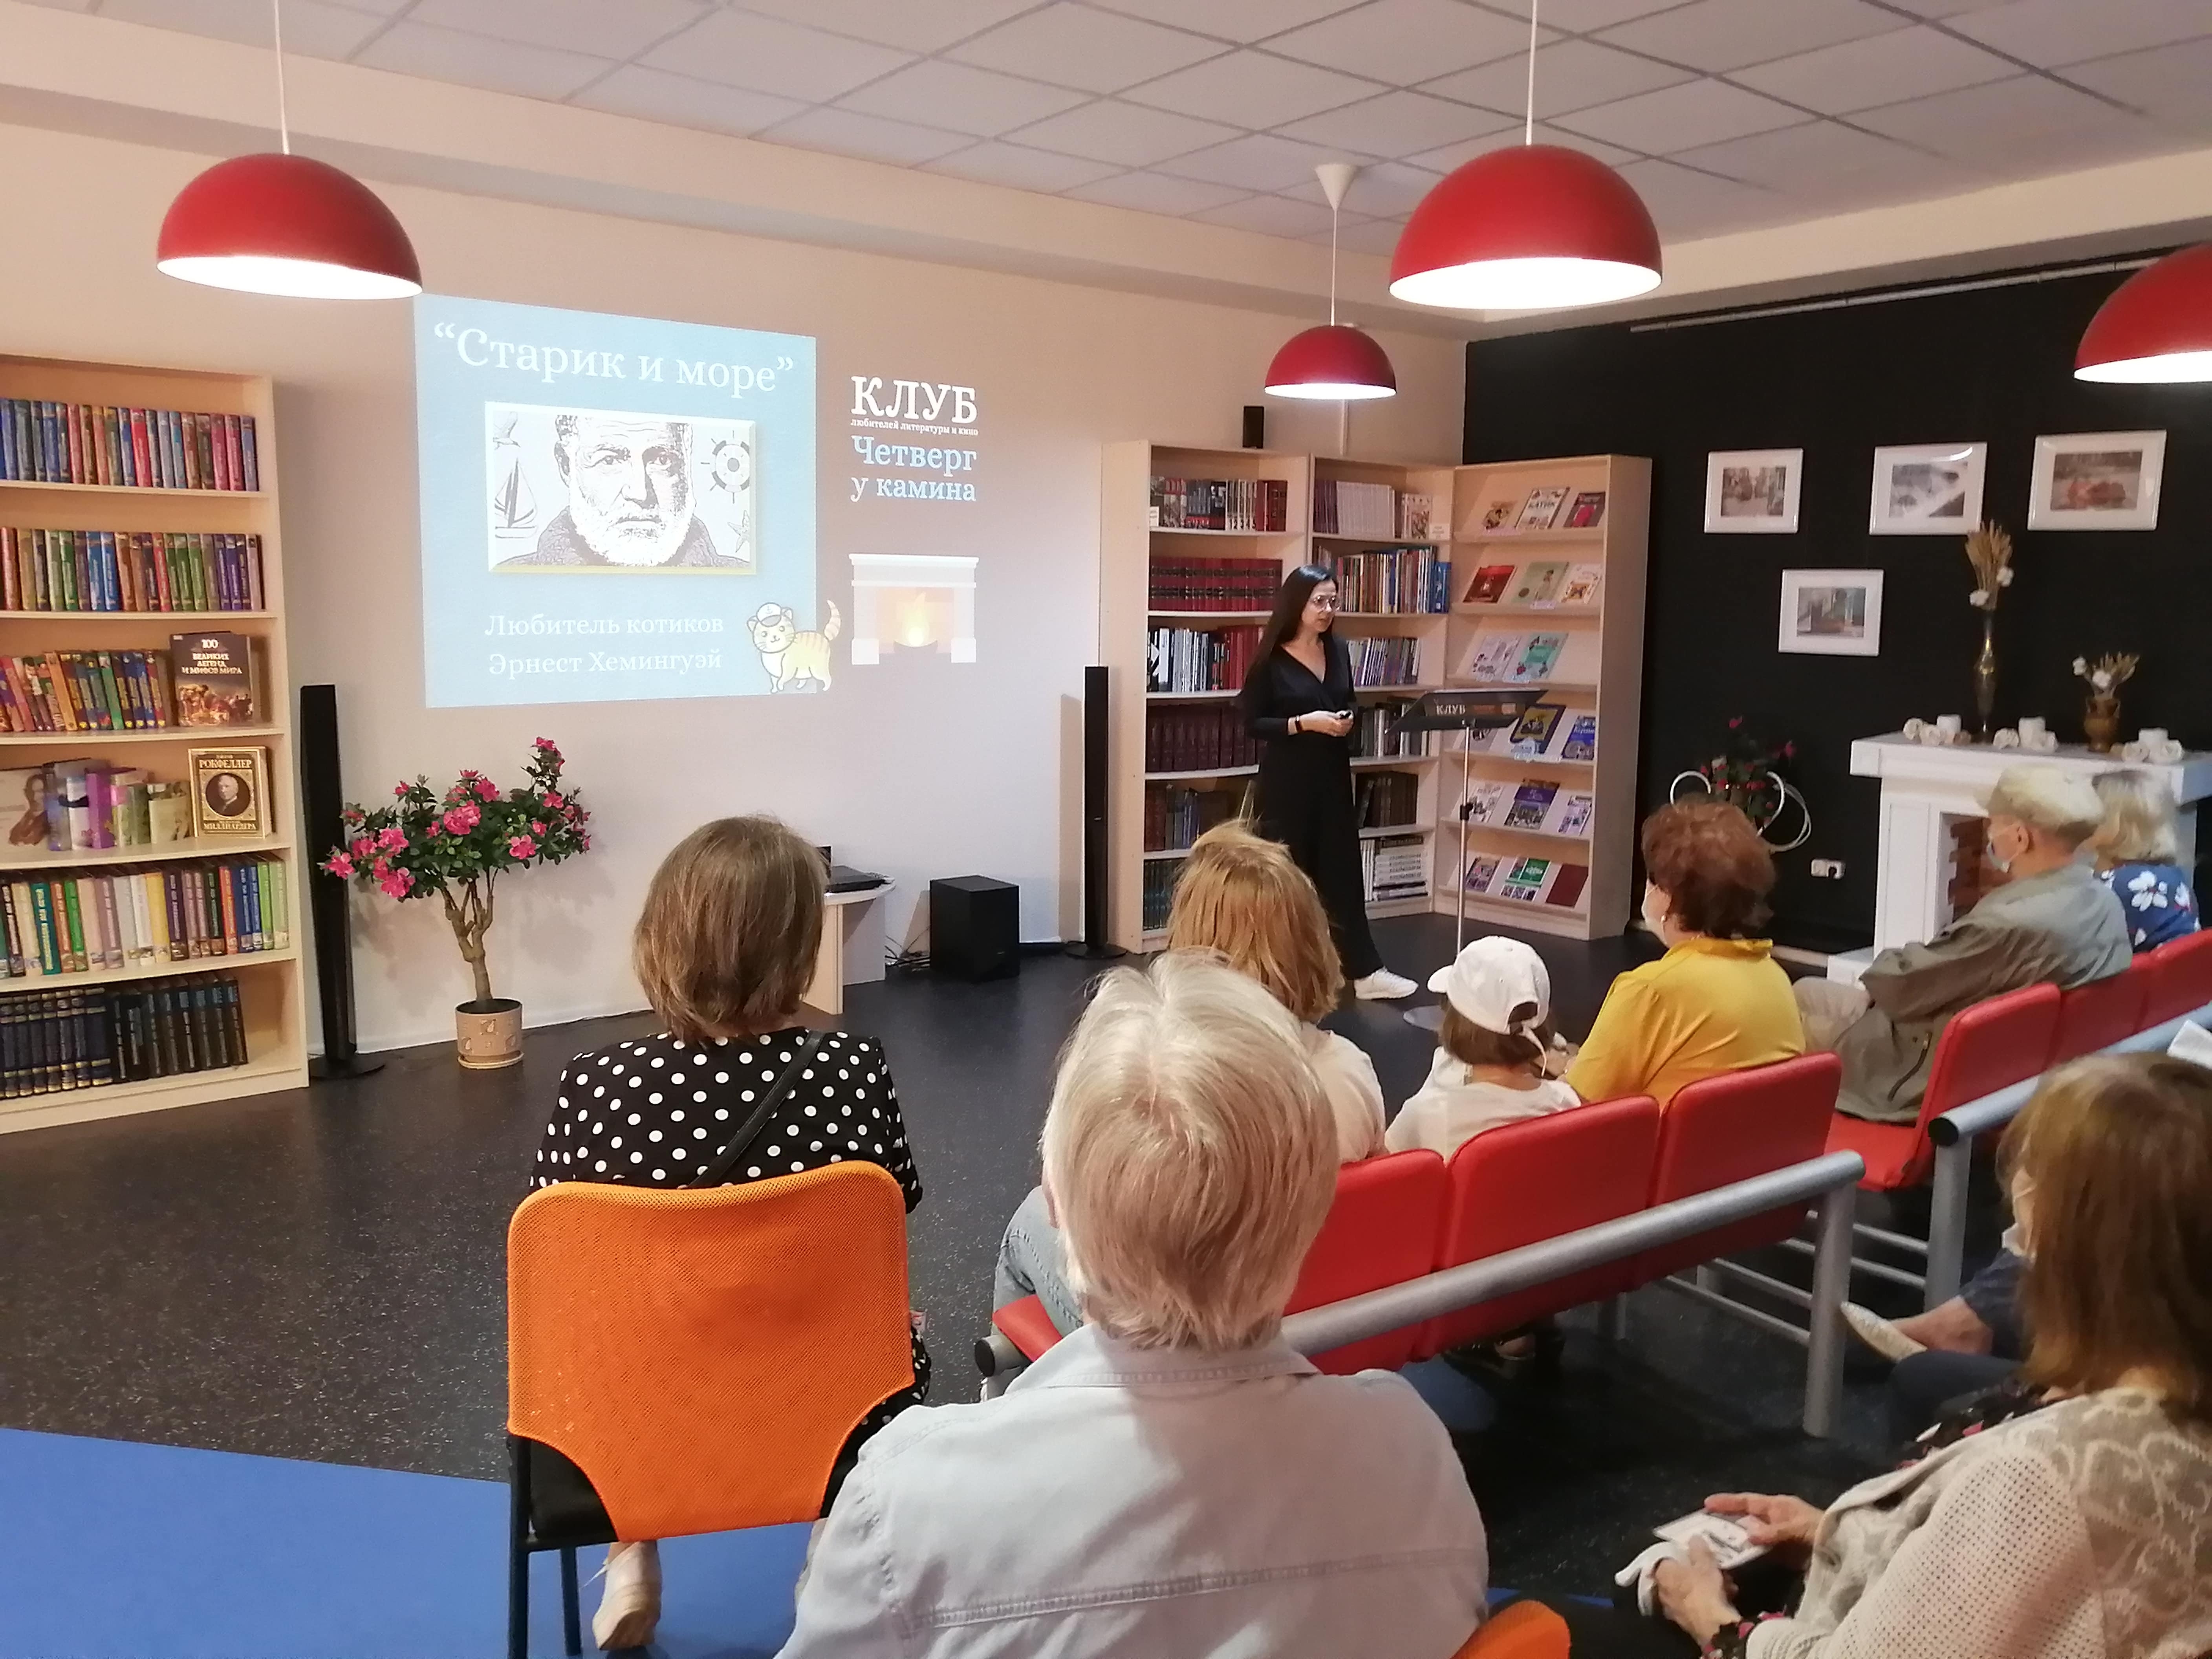 Встреча литературного клуба состоялась в Центральной библиотеке Щербинки. Фото: официальный сайт ЦБС Щербинки